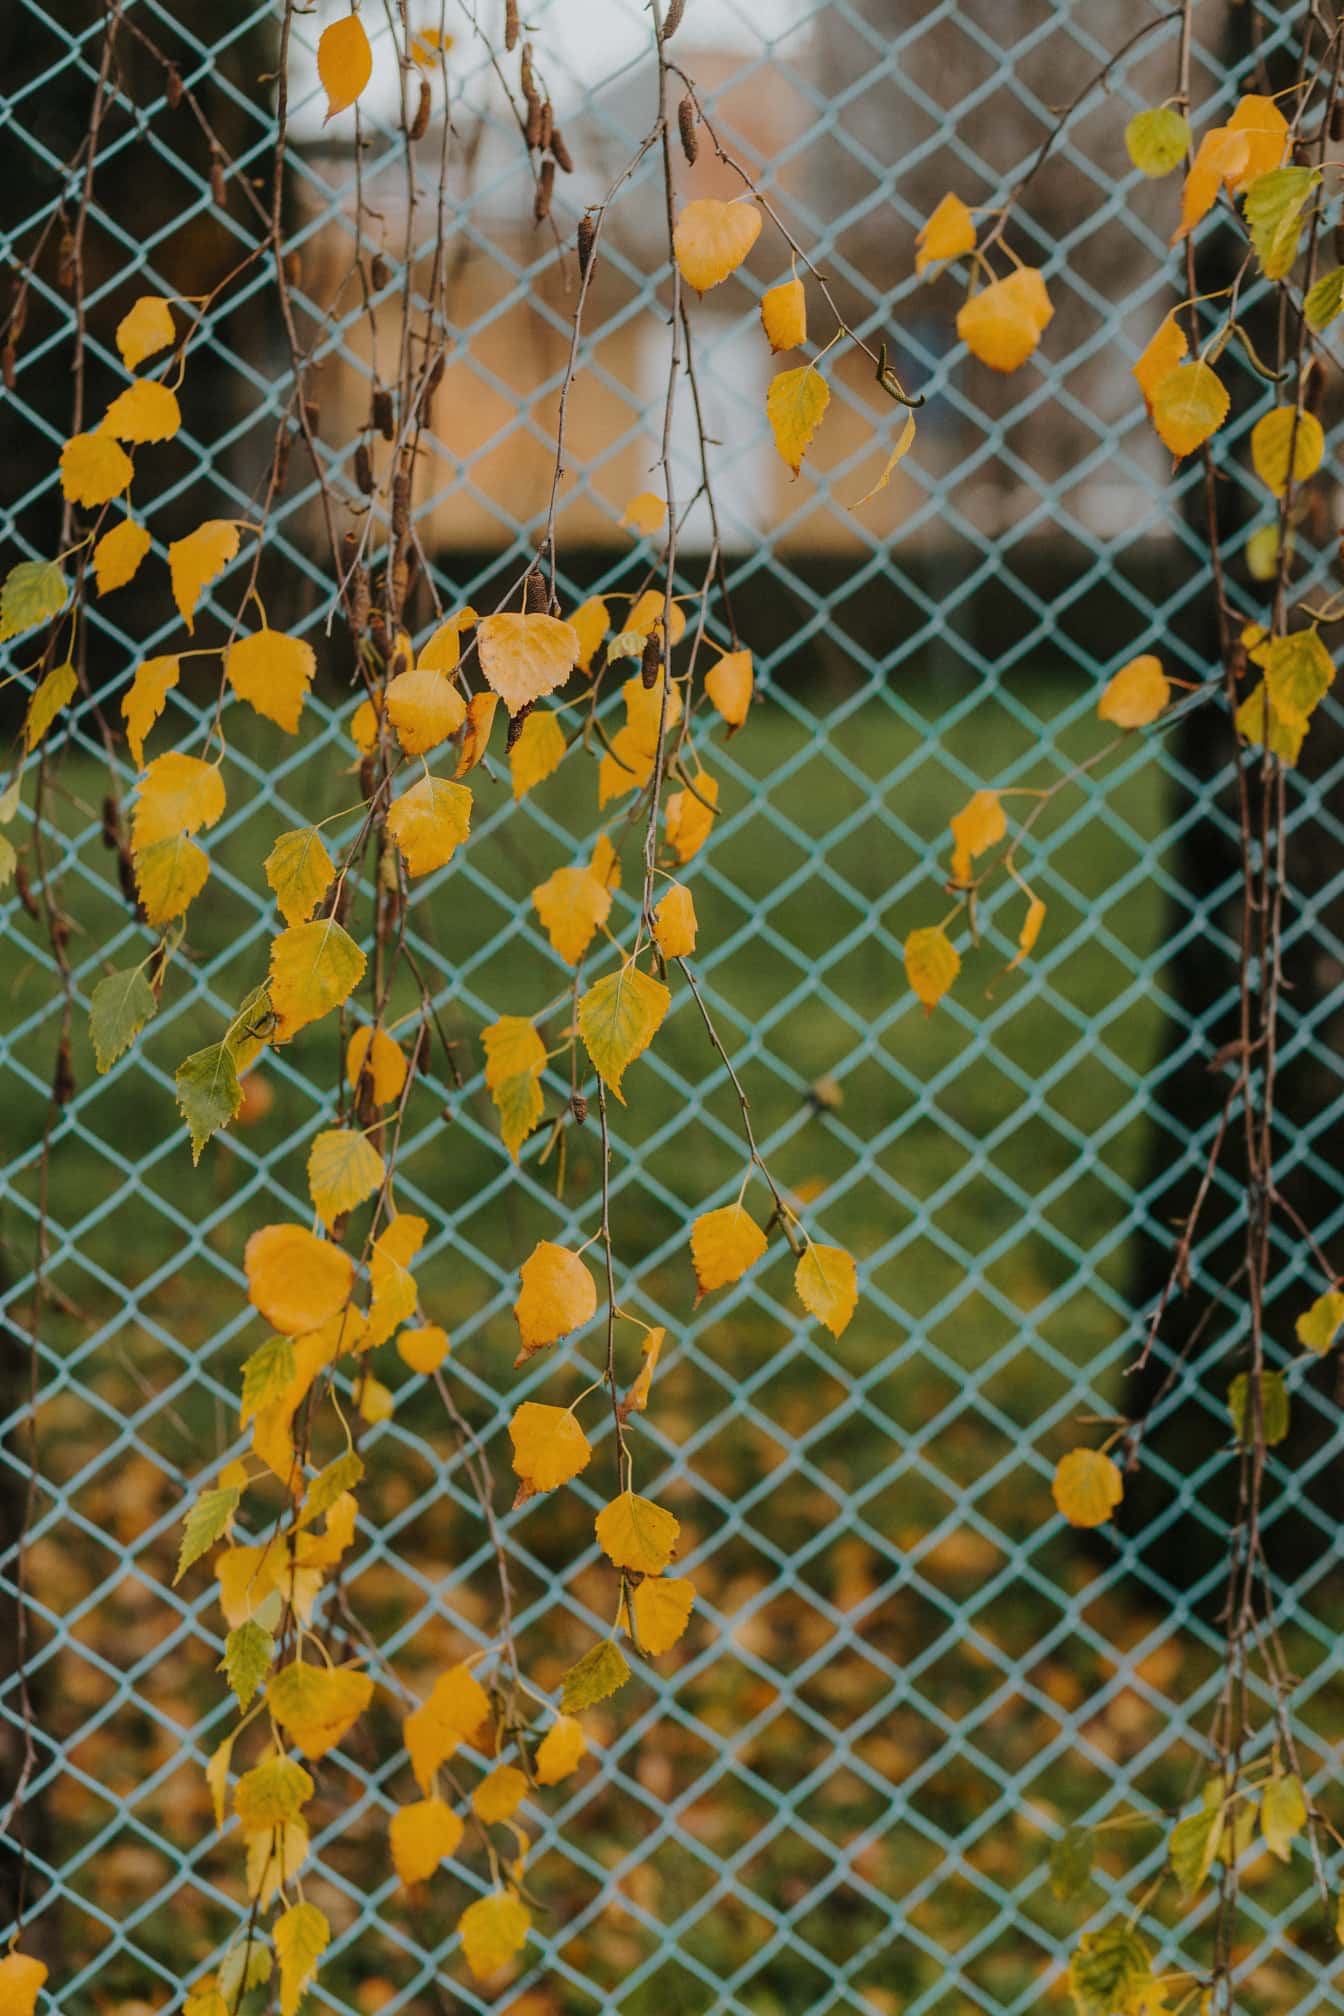 울타리 뒤쪽에 있는 가지에 노란 자작나무 잎